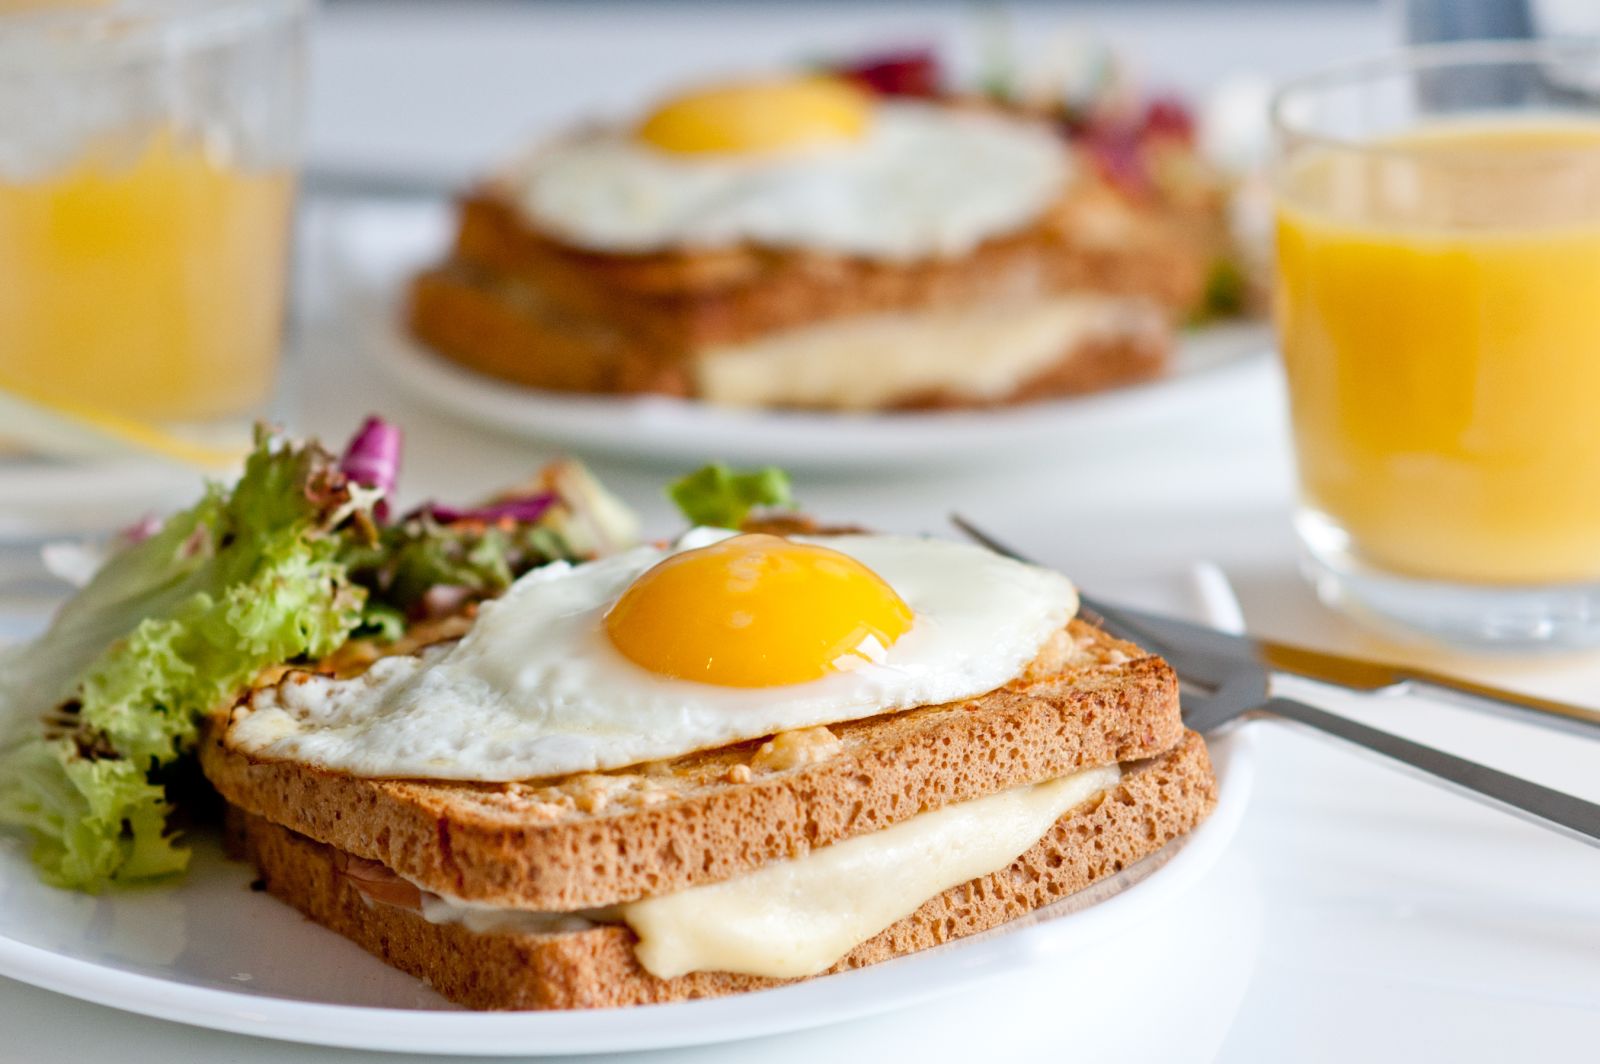 Bánh mì kẹp phô mai và trứng giúp cân bằng chất dinh dưỡng